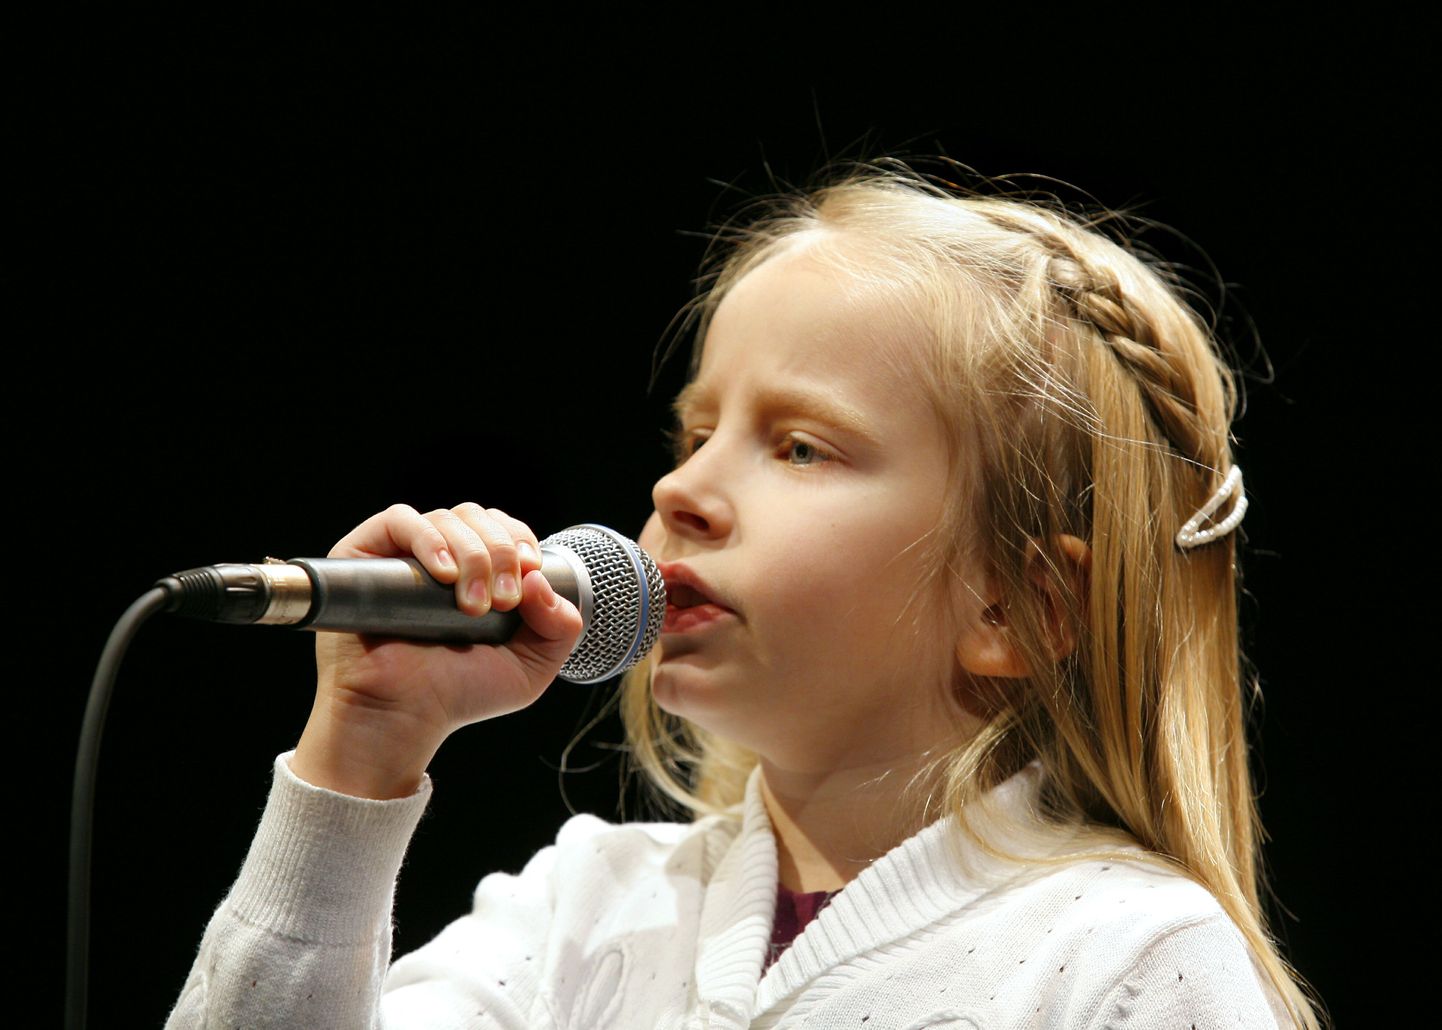 Esimese "Kuldmikrofoni" lauluvõistluse võitis 2011. aastal Elise Pani.